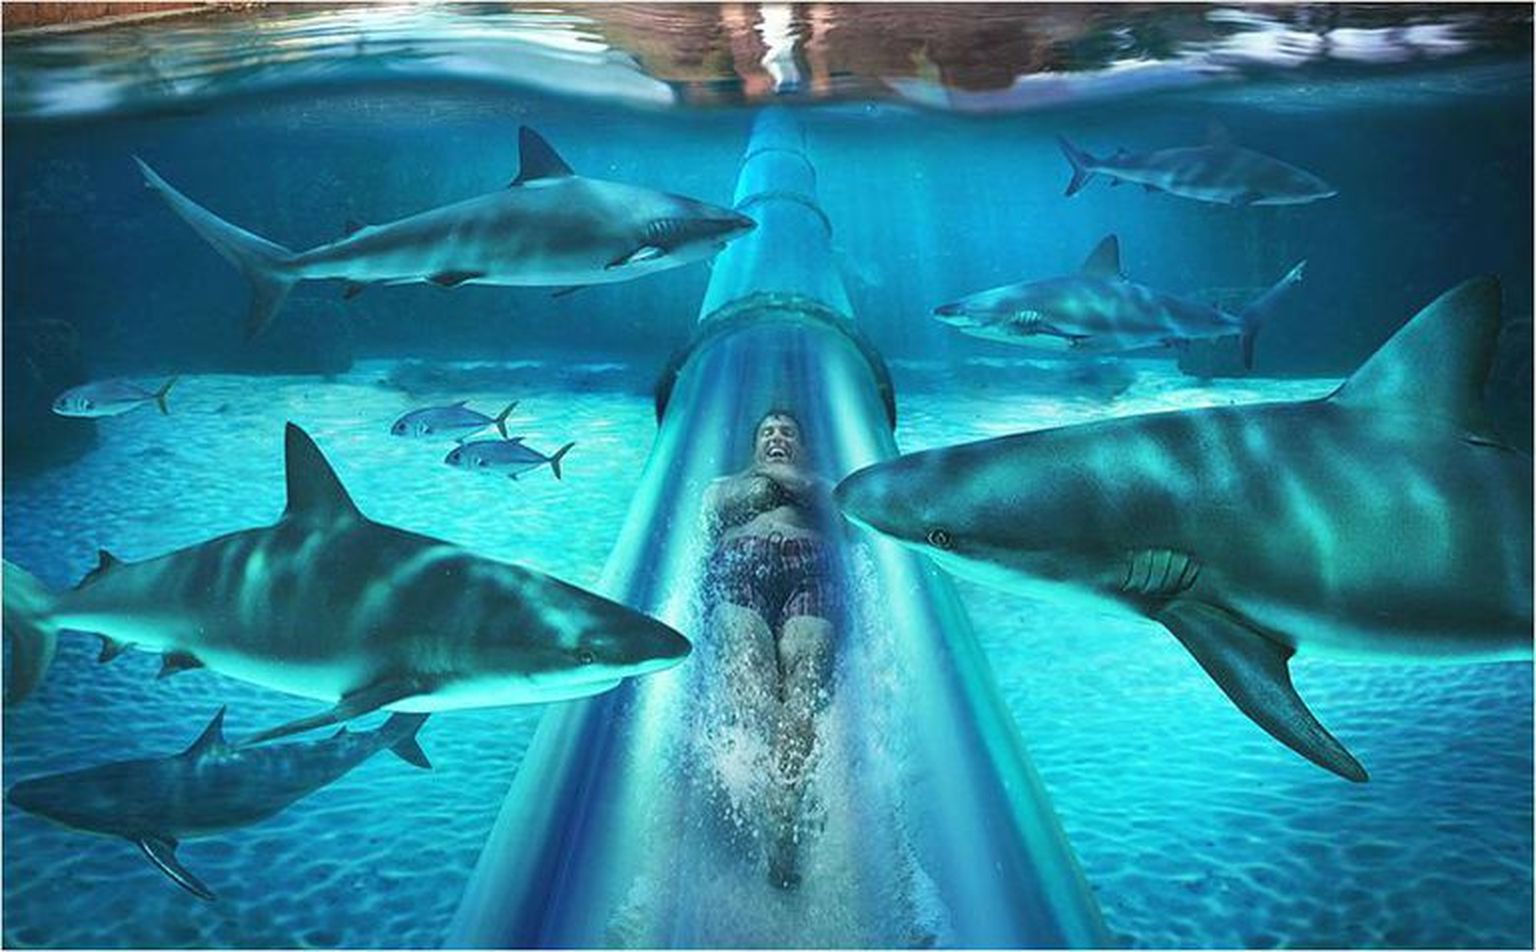 Dirhami Meritähte rajatavas 15 meetri sügavuses akvaariumis hakkavad elama nii haid kui ka raid.